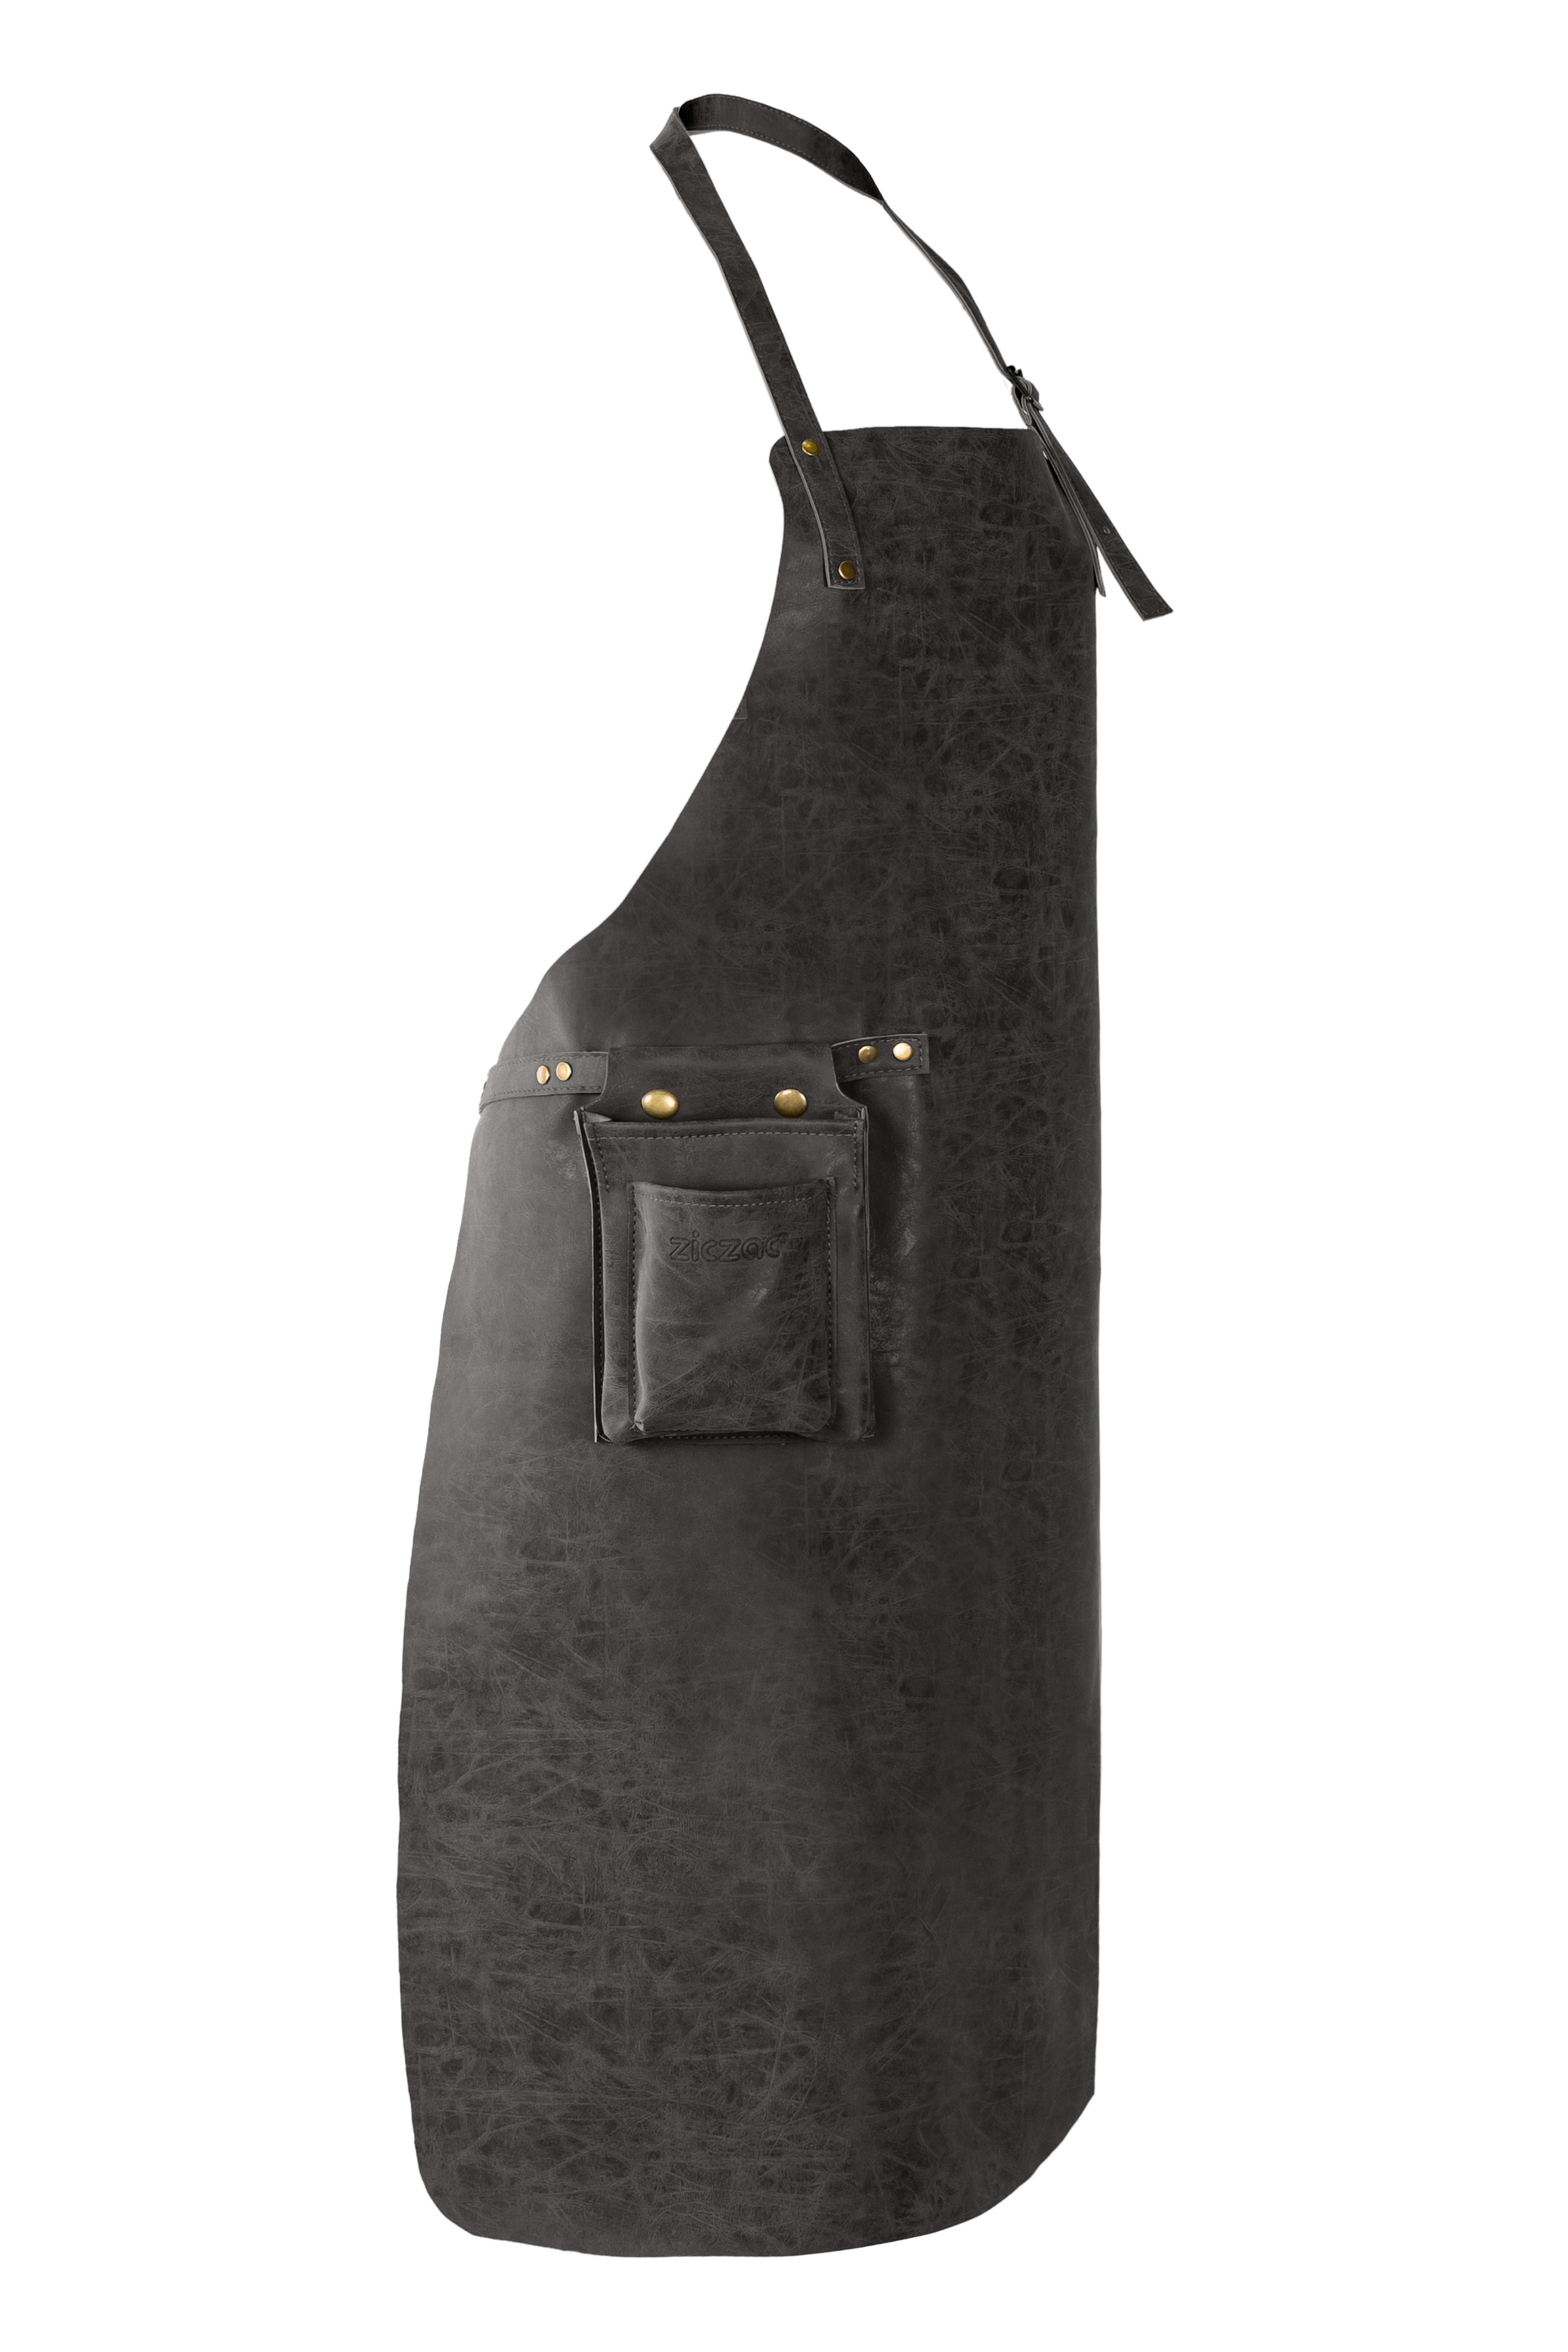 Tablier TRUMAN (Towel loop - no pocket - opt. Accessory bag), 70x90 cm, black